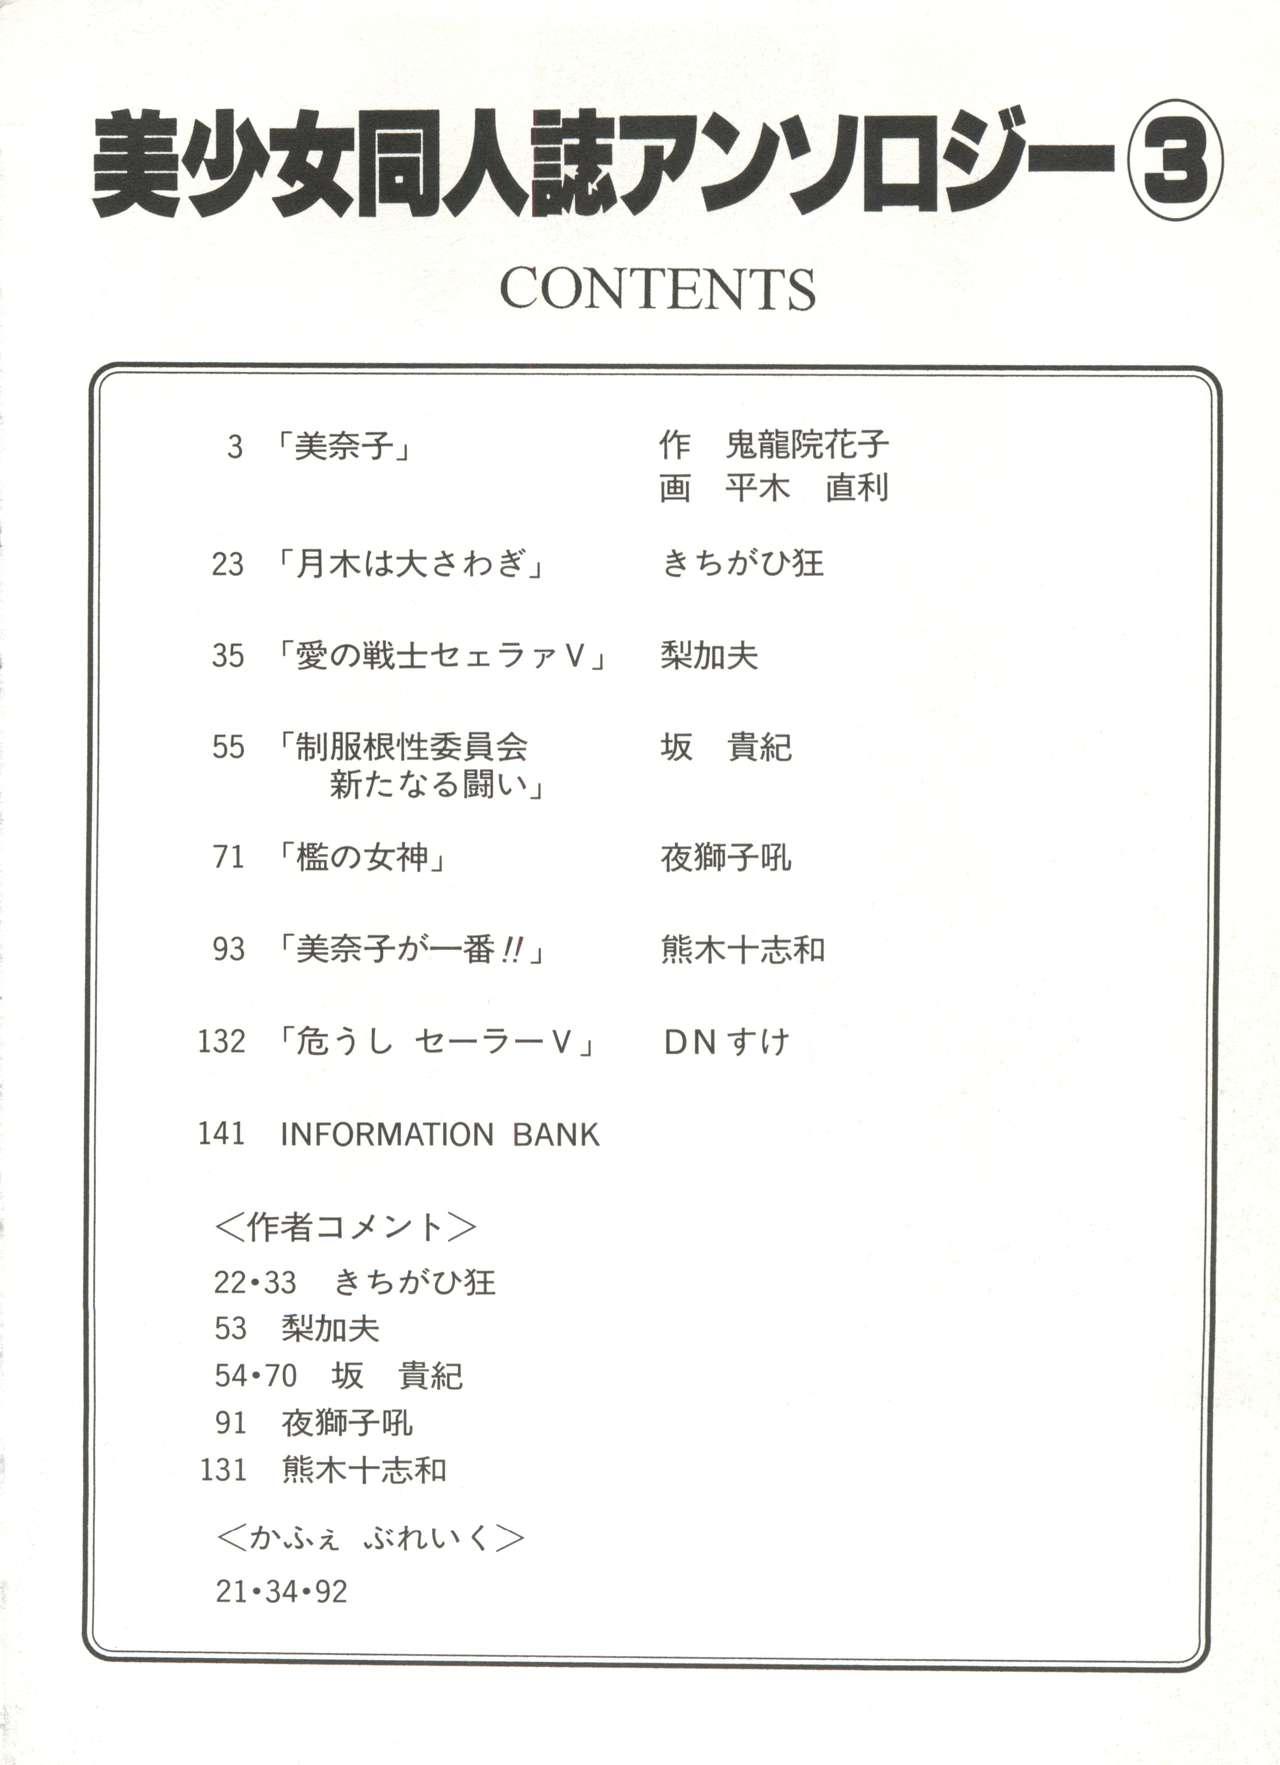 Sexy Whores Bishoujo Doujinshi Anthology 3 - Moon Paradise 2 Tsuki no Rakuen - Sailor moon Breasts - Page 7